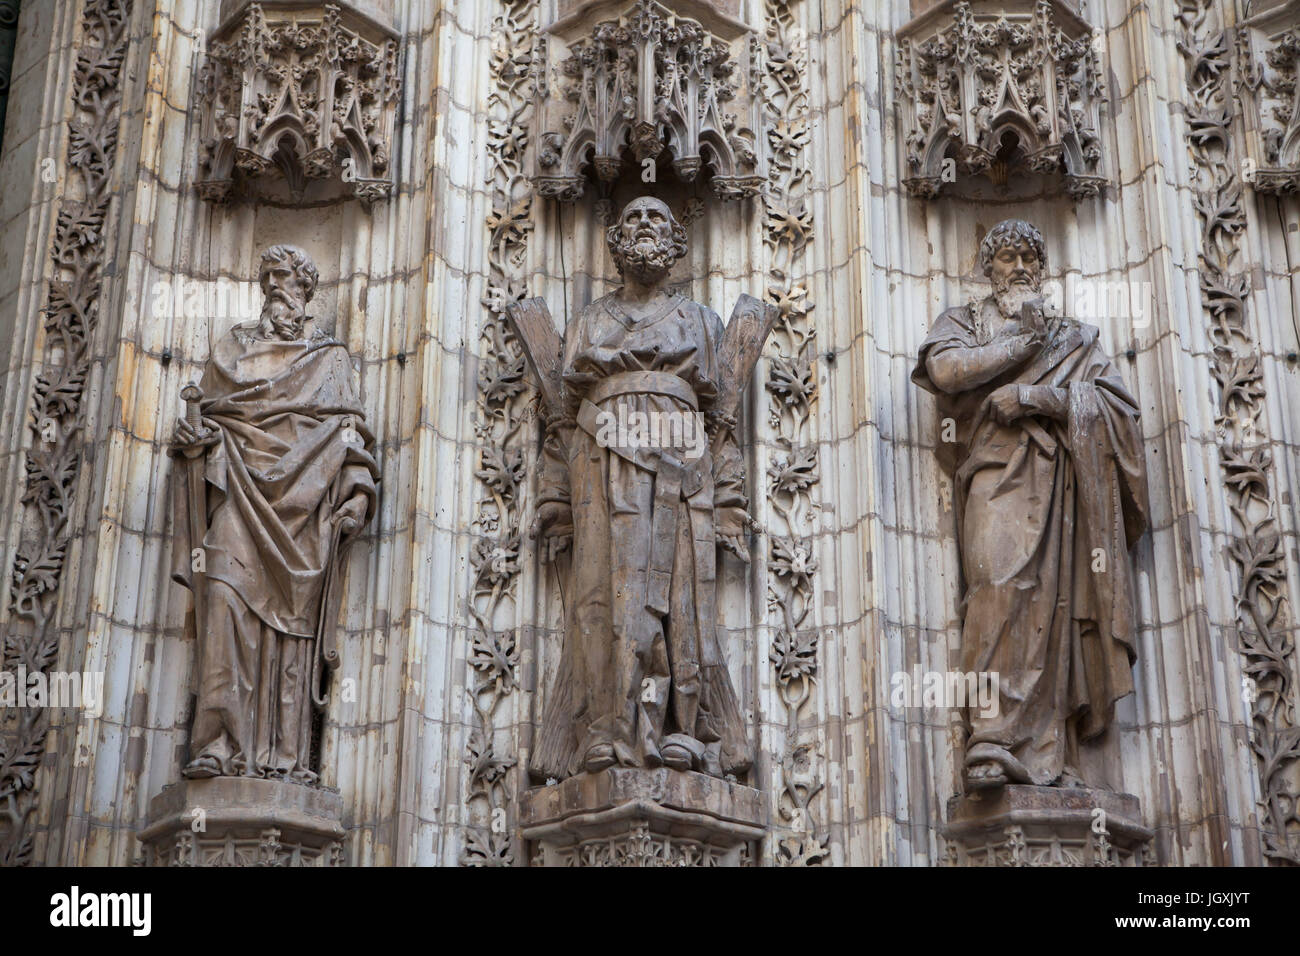 Saint Paul, St. Andreas und St. Thomas. Statuen der Apostel auf dem Portal der Himmelfahrt (Puerta De La Asunción) der Kathedrale von Sevilla (Catedral de Sevilla) in Sevilla, Andalusien, Spanien. Stockfoto